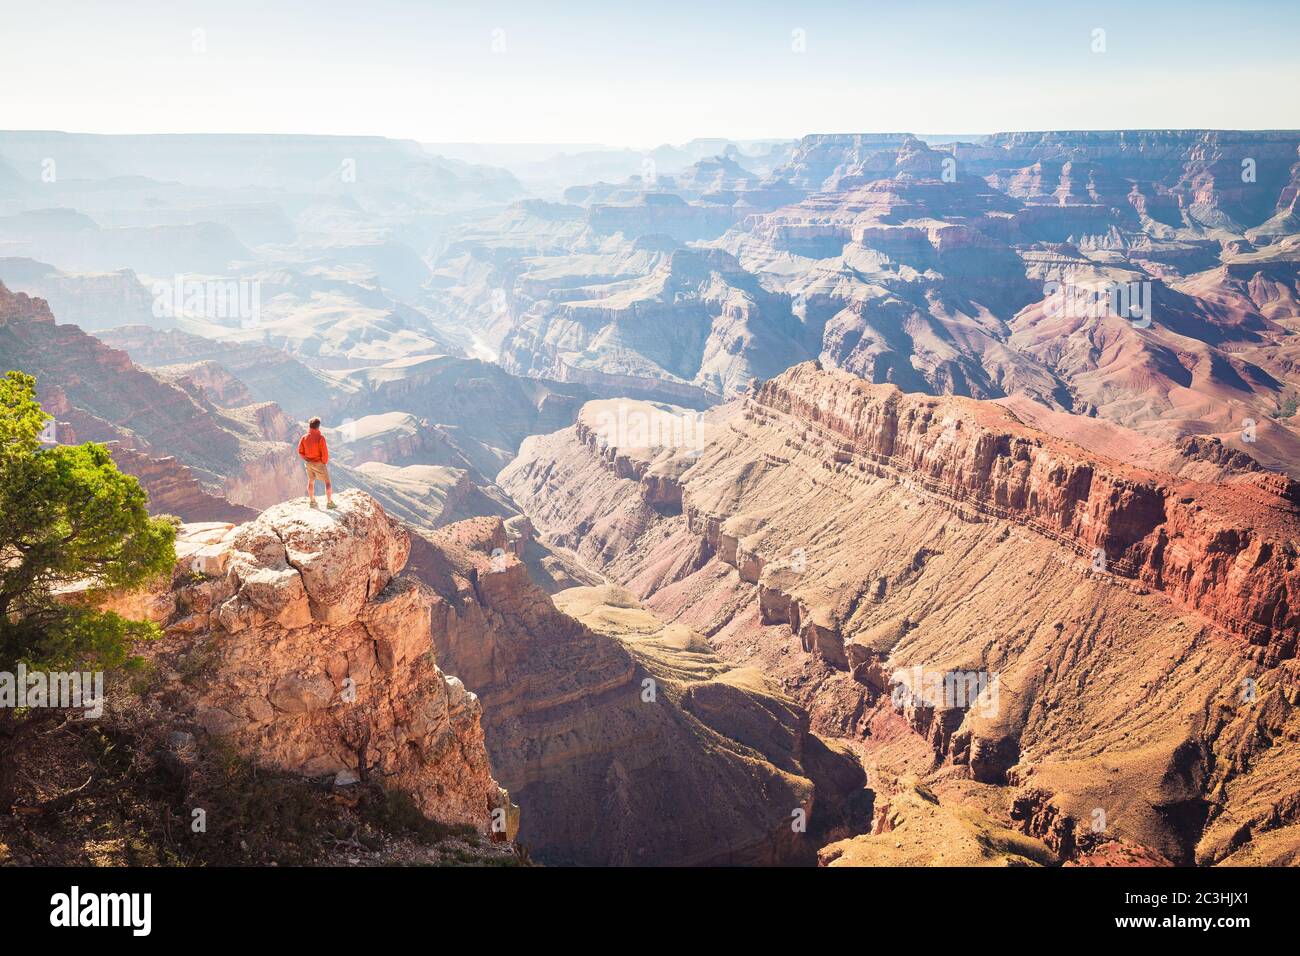 Un uomo escursionista è in piedi su una ripida scogliera che si ammira la vista incredibile sul famoso Grand Canyon in una bella giornata di sole in estate, Arizona, Stati Uniti Foto Stock